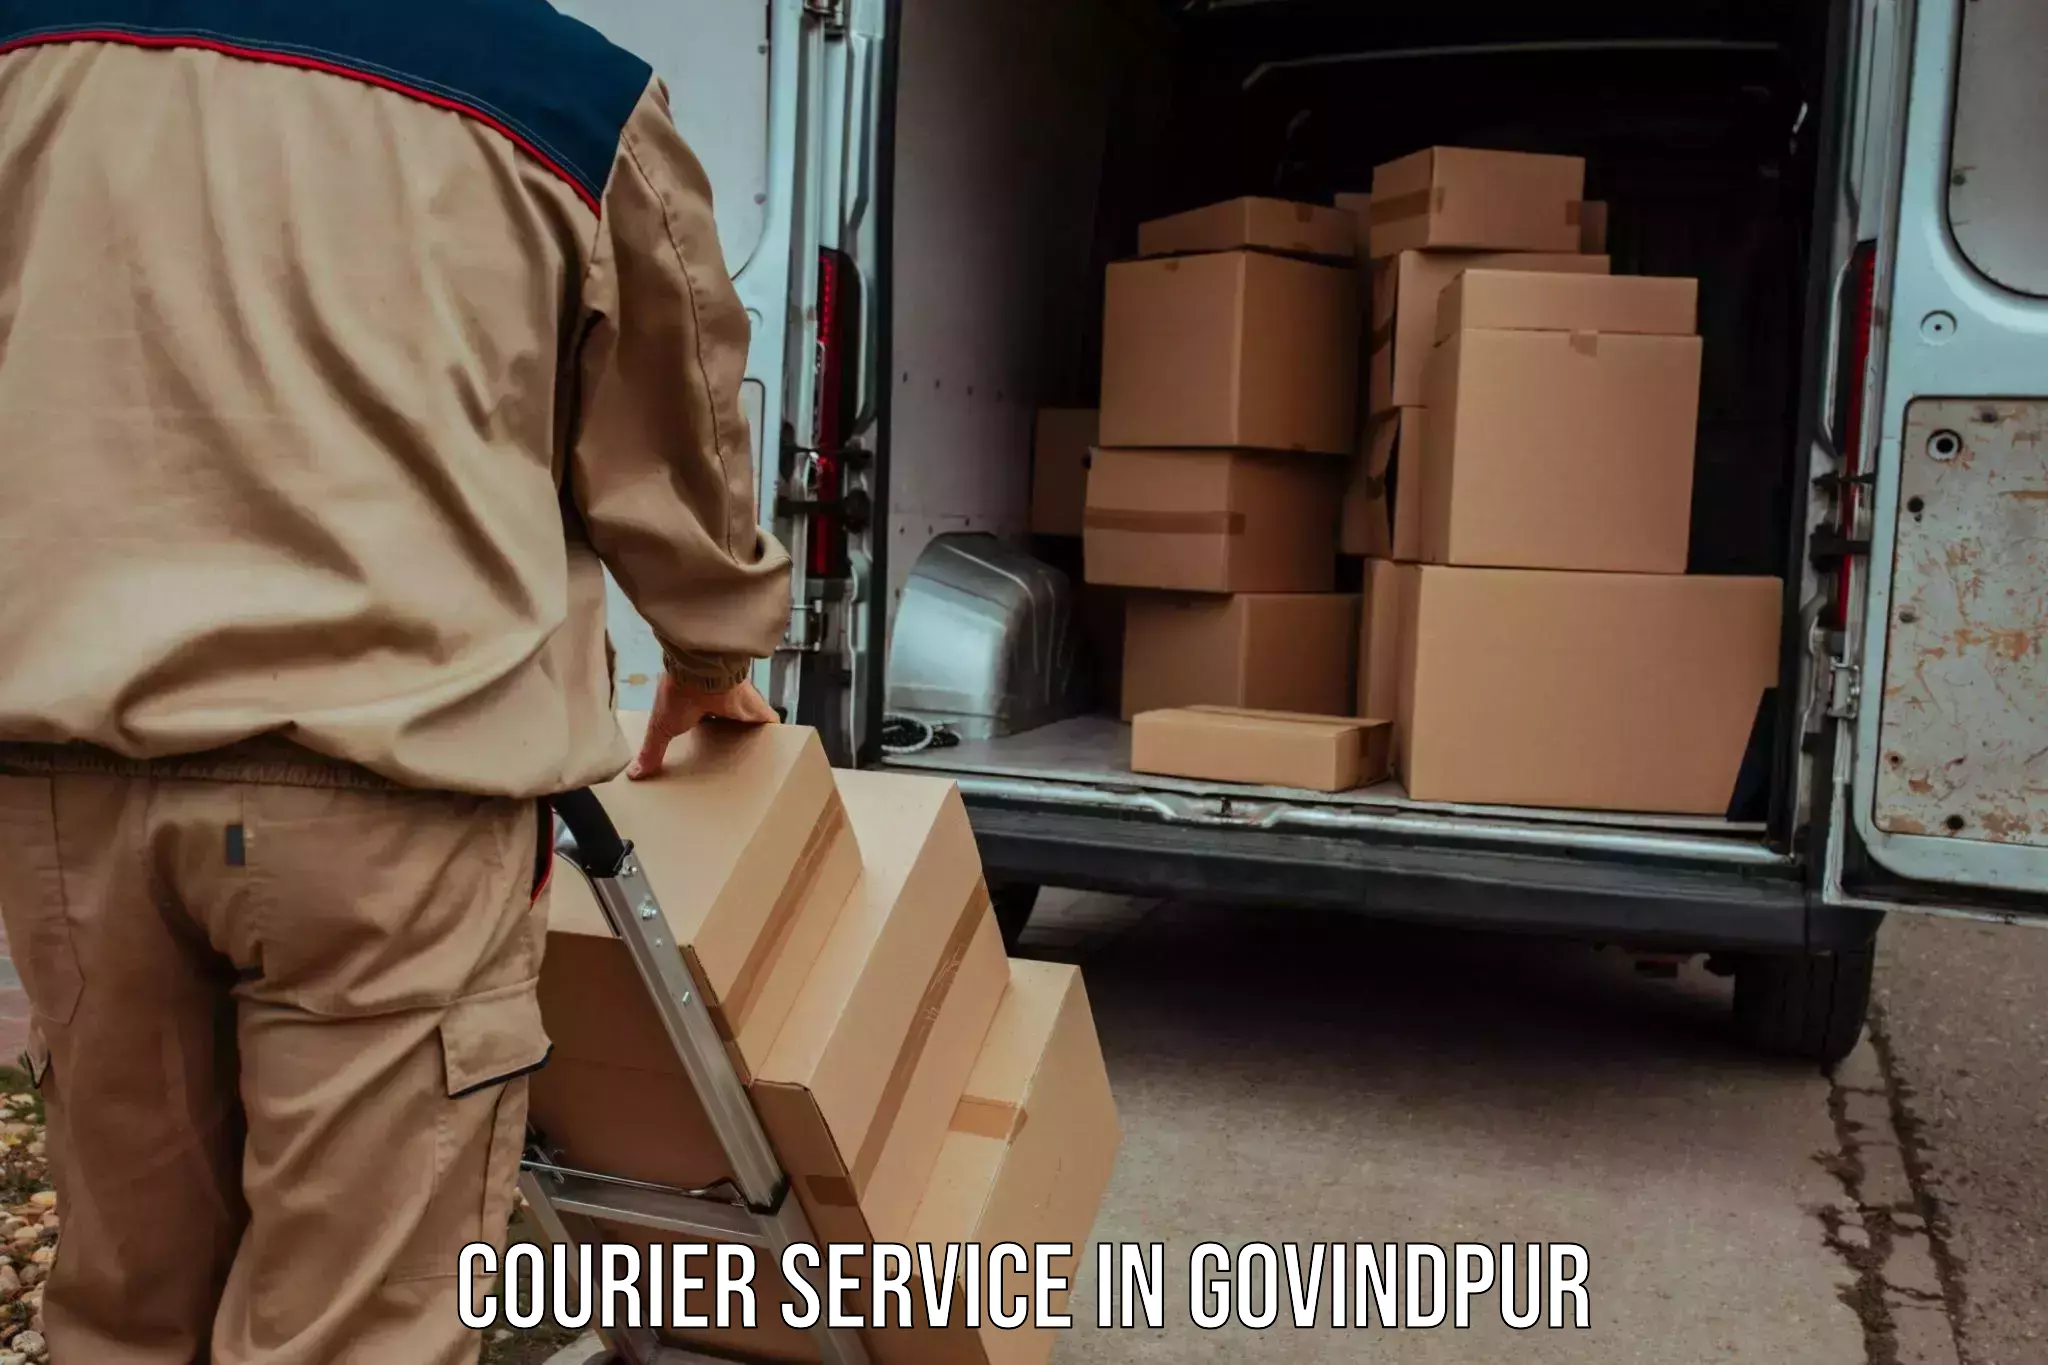 Cash on delivery service in Govindpur